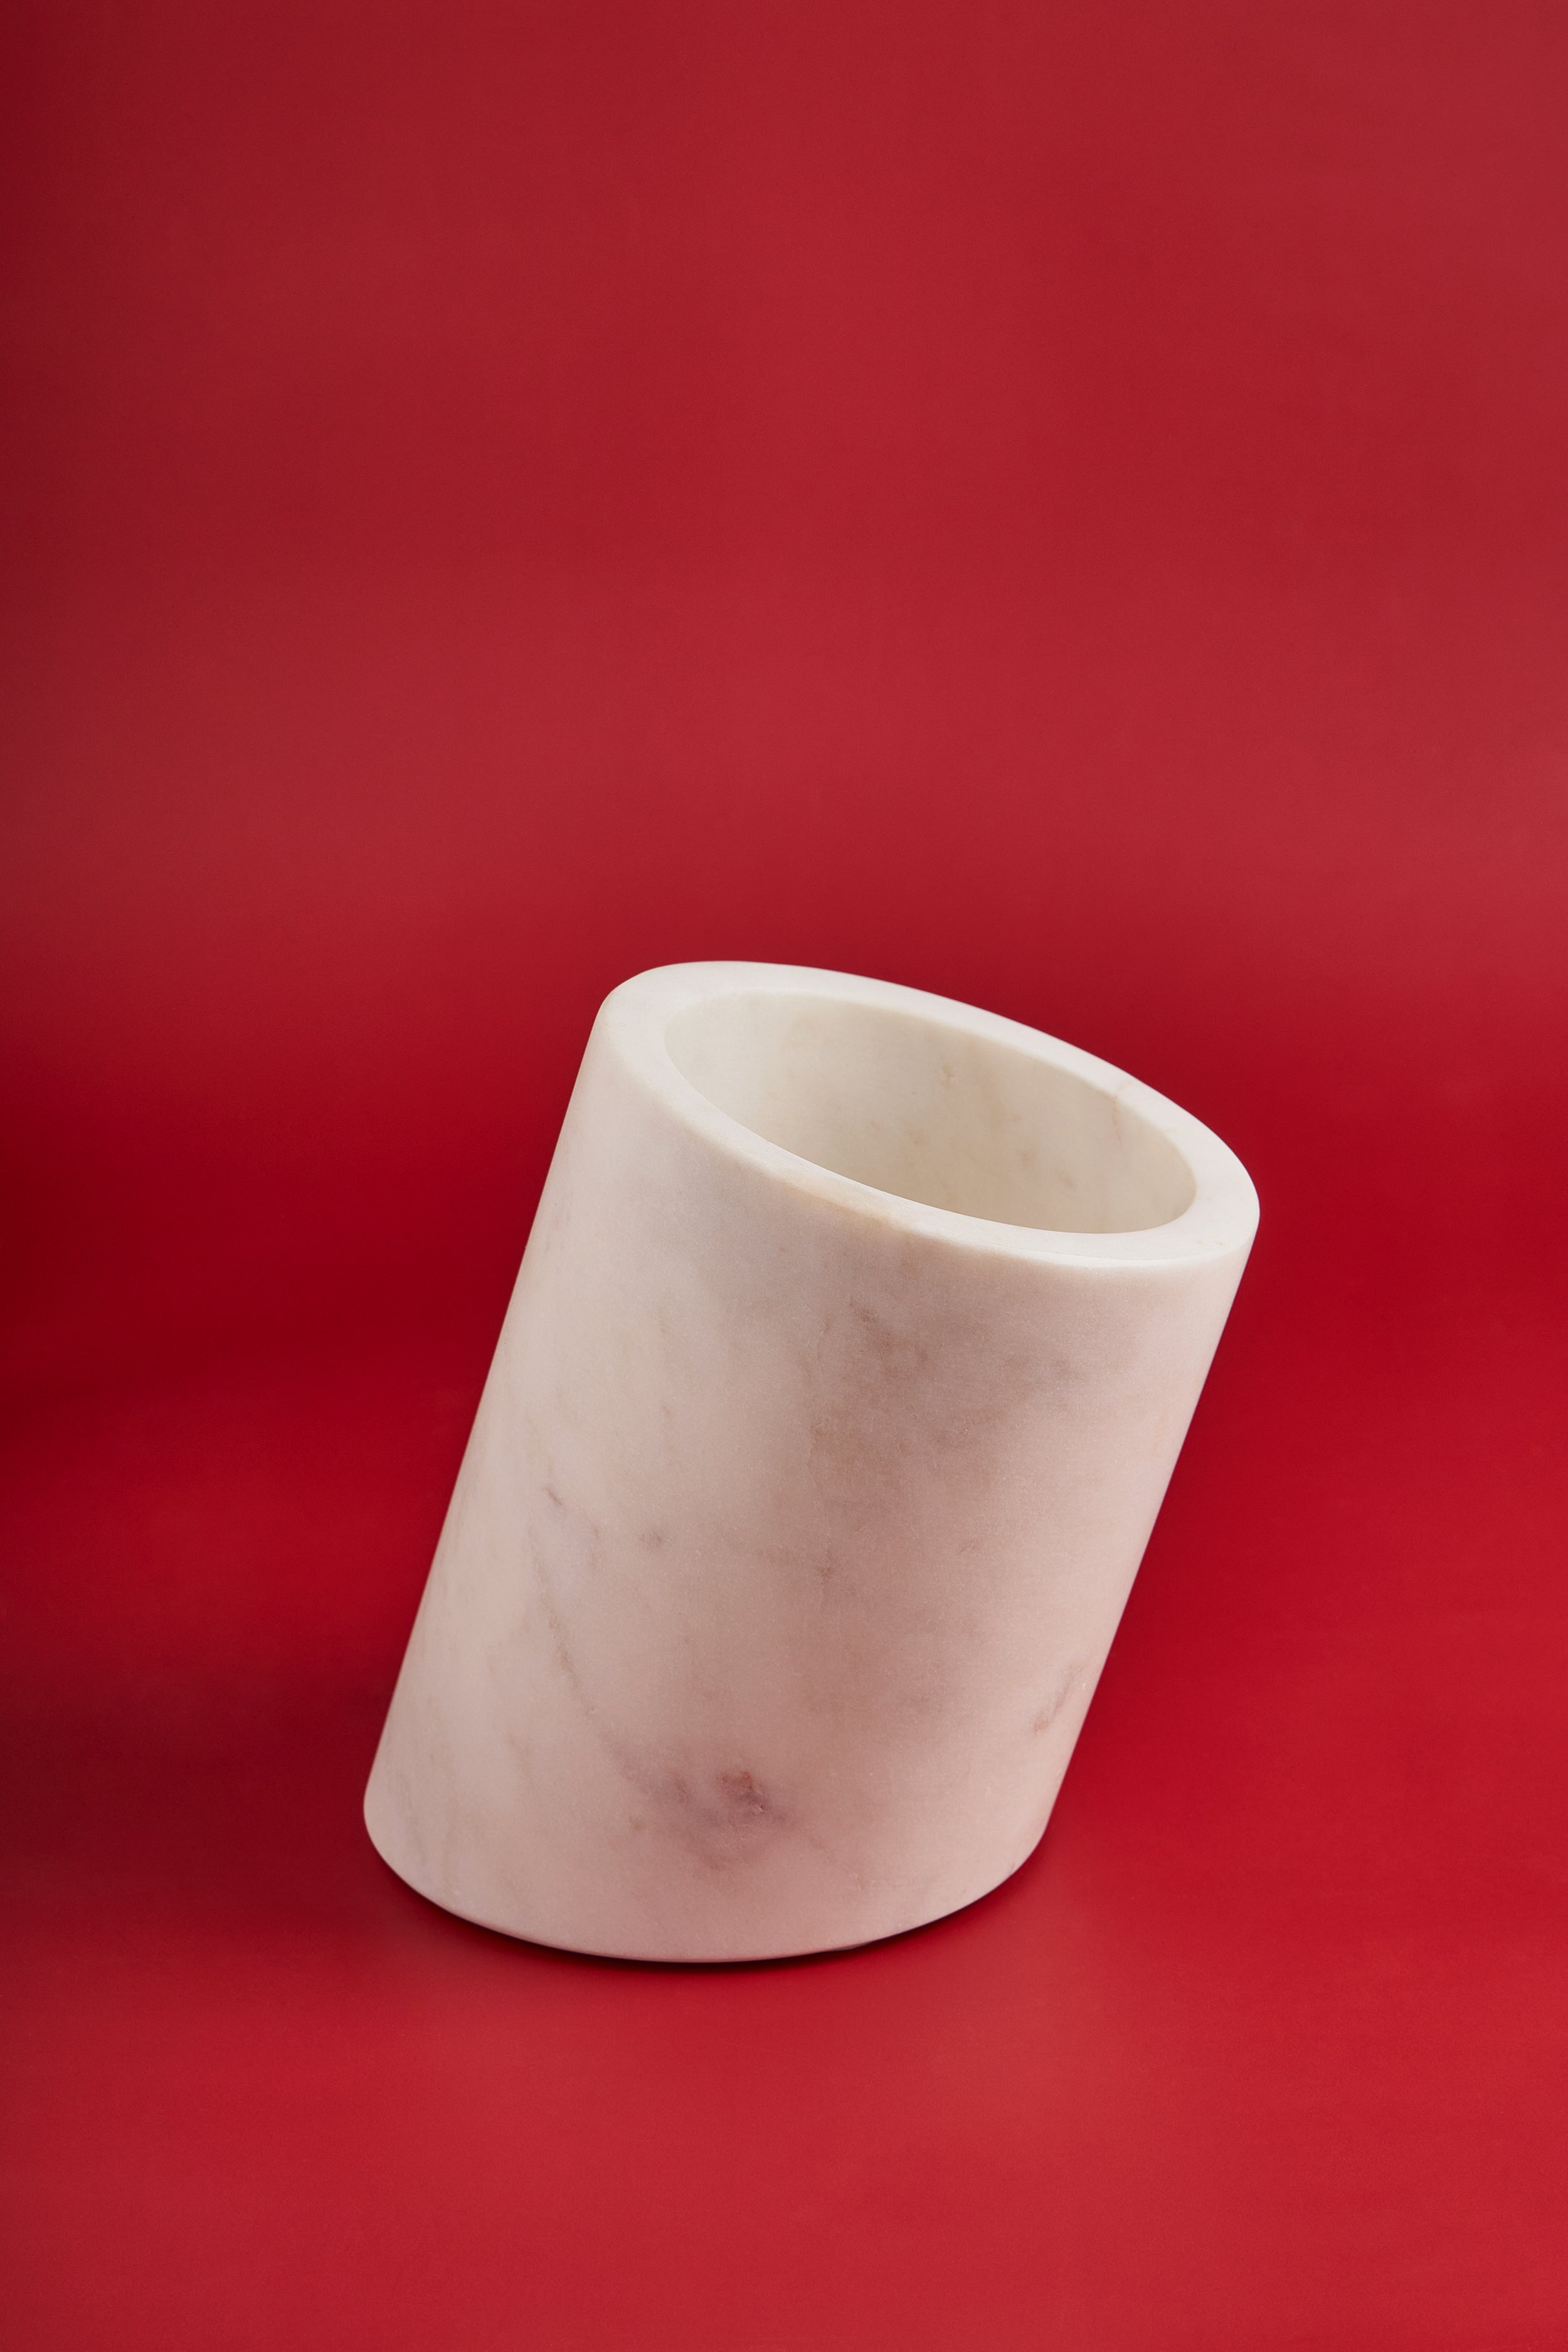 https://www.gaurikohli.com/cdn/shop/products/GK51054-2-premium-white-marble-wine-chiller-holder-bucket.jpg?v=1643279392&width=2500